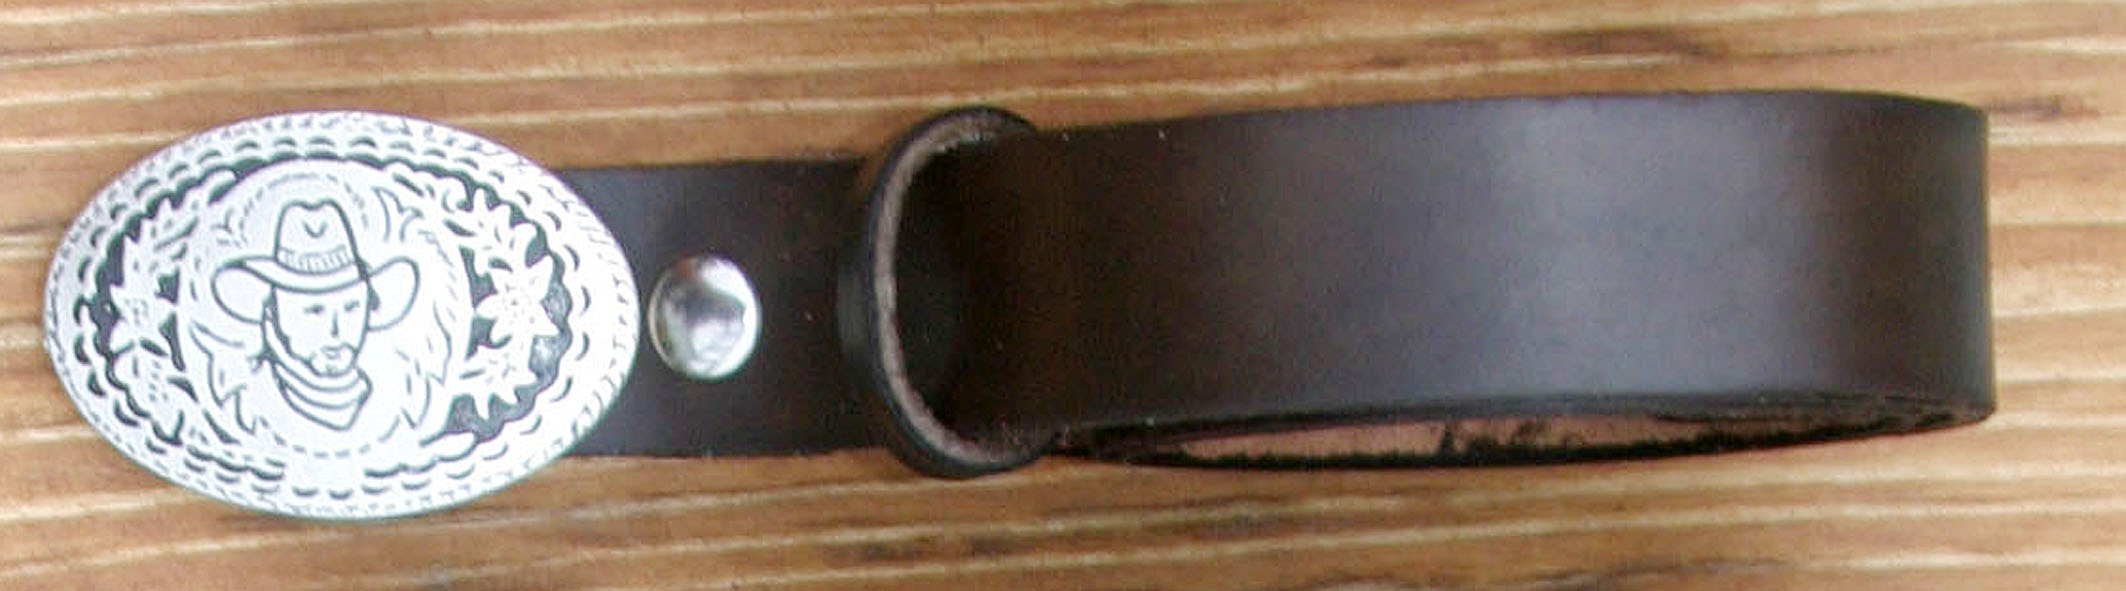 Cintura da Bambino  da 3 Cm. in  Pelle Morbida